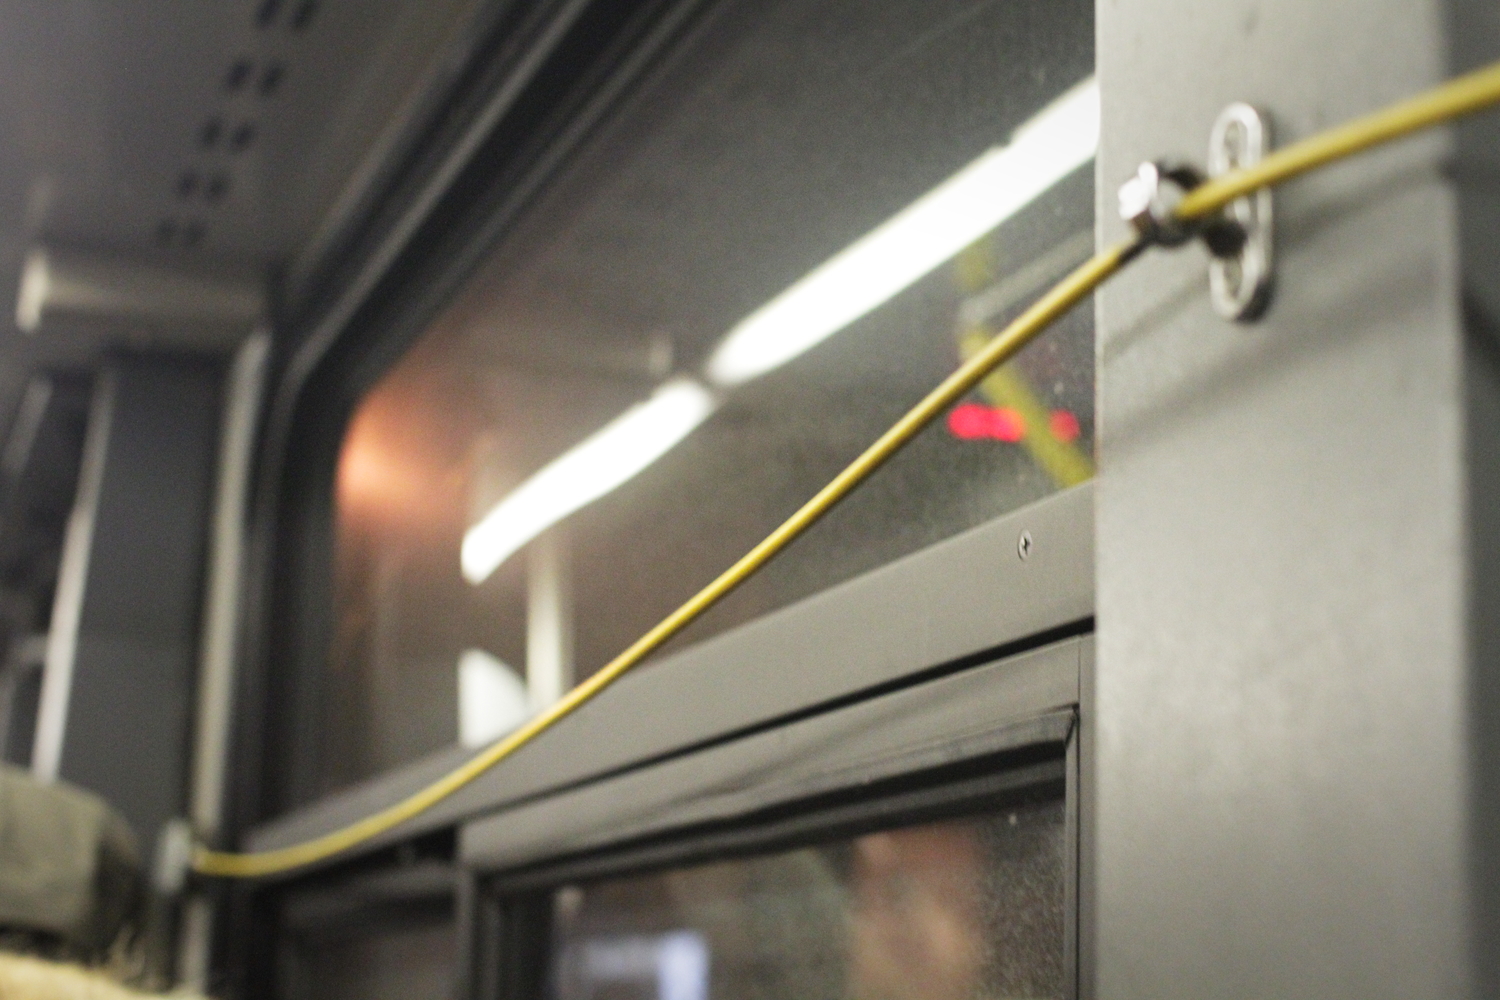 Le fil jaune dans le bus, qu’il faut tirer pour descendre.